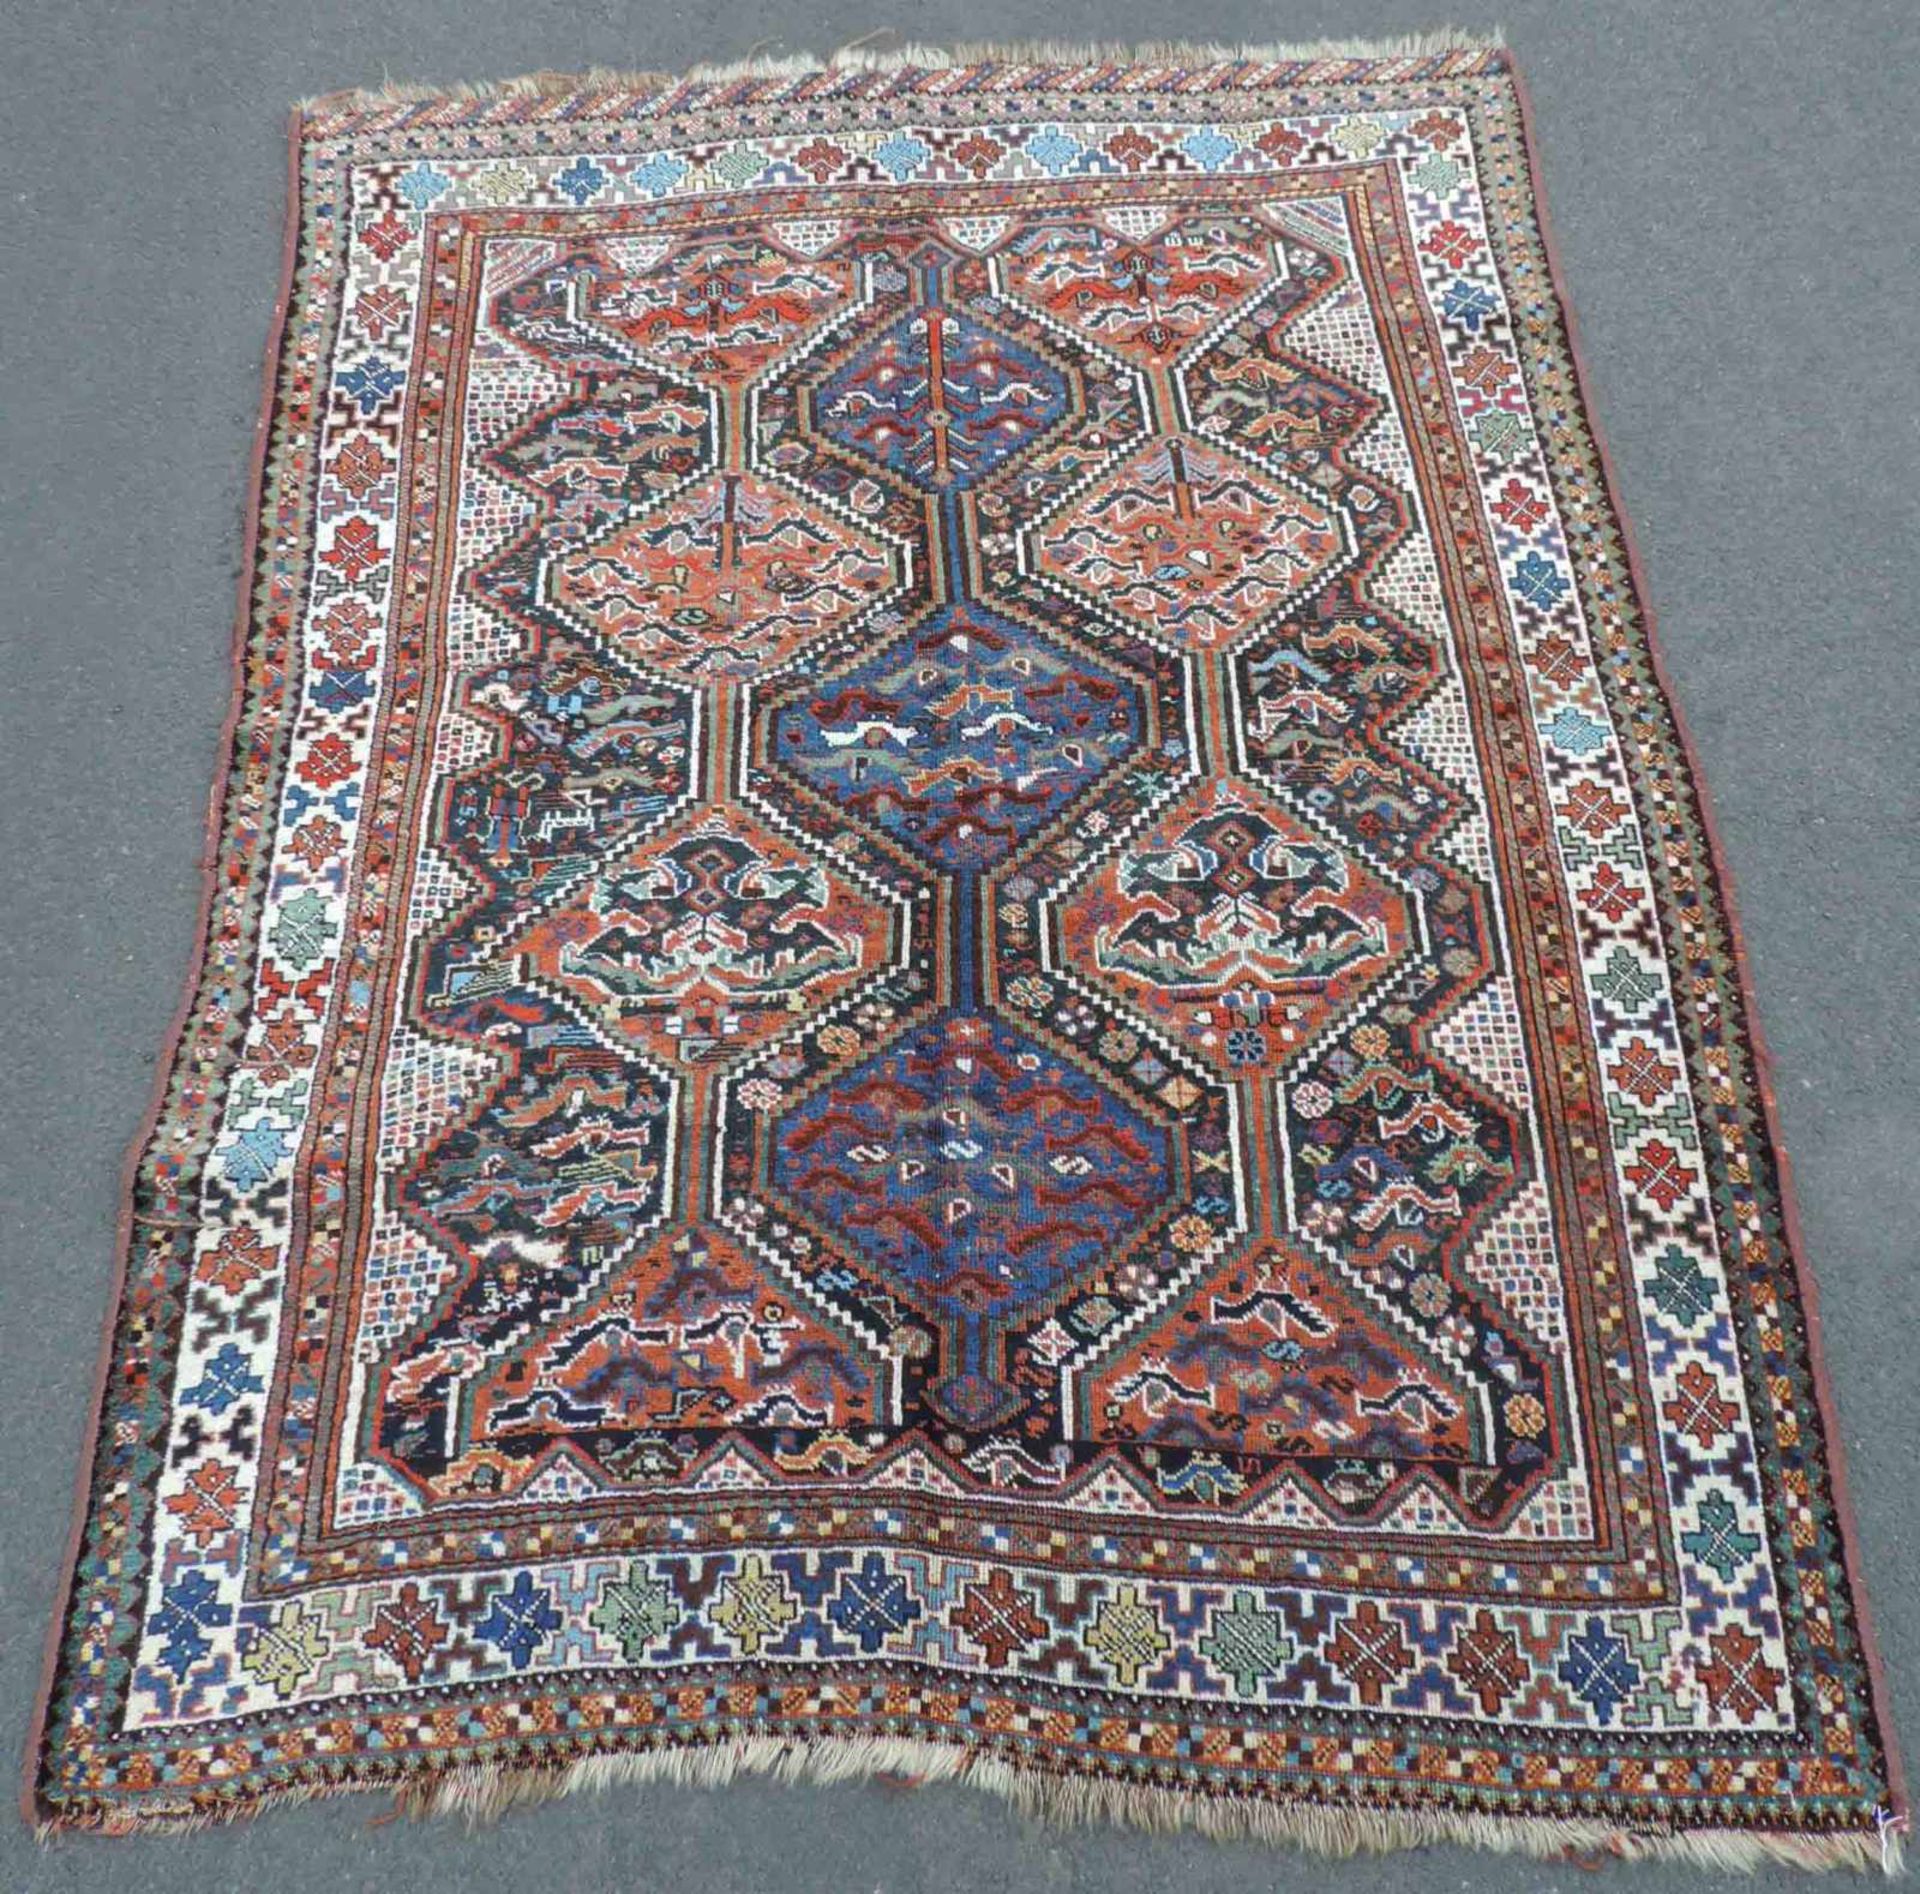 Khamseh Stammesteppich. Iran. Antik, um 1900. 199 cm x 152 cm. Handgeknüpft. Wolle auf Wolle.